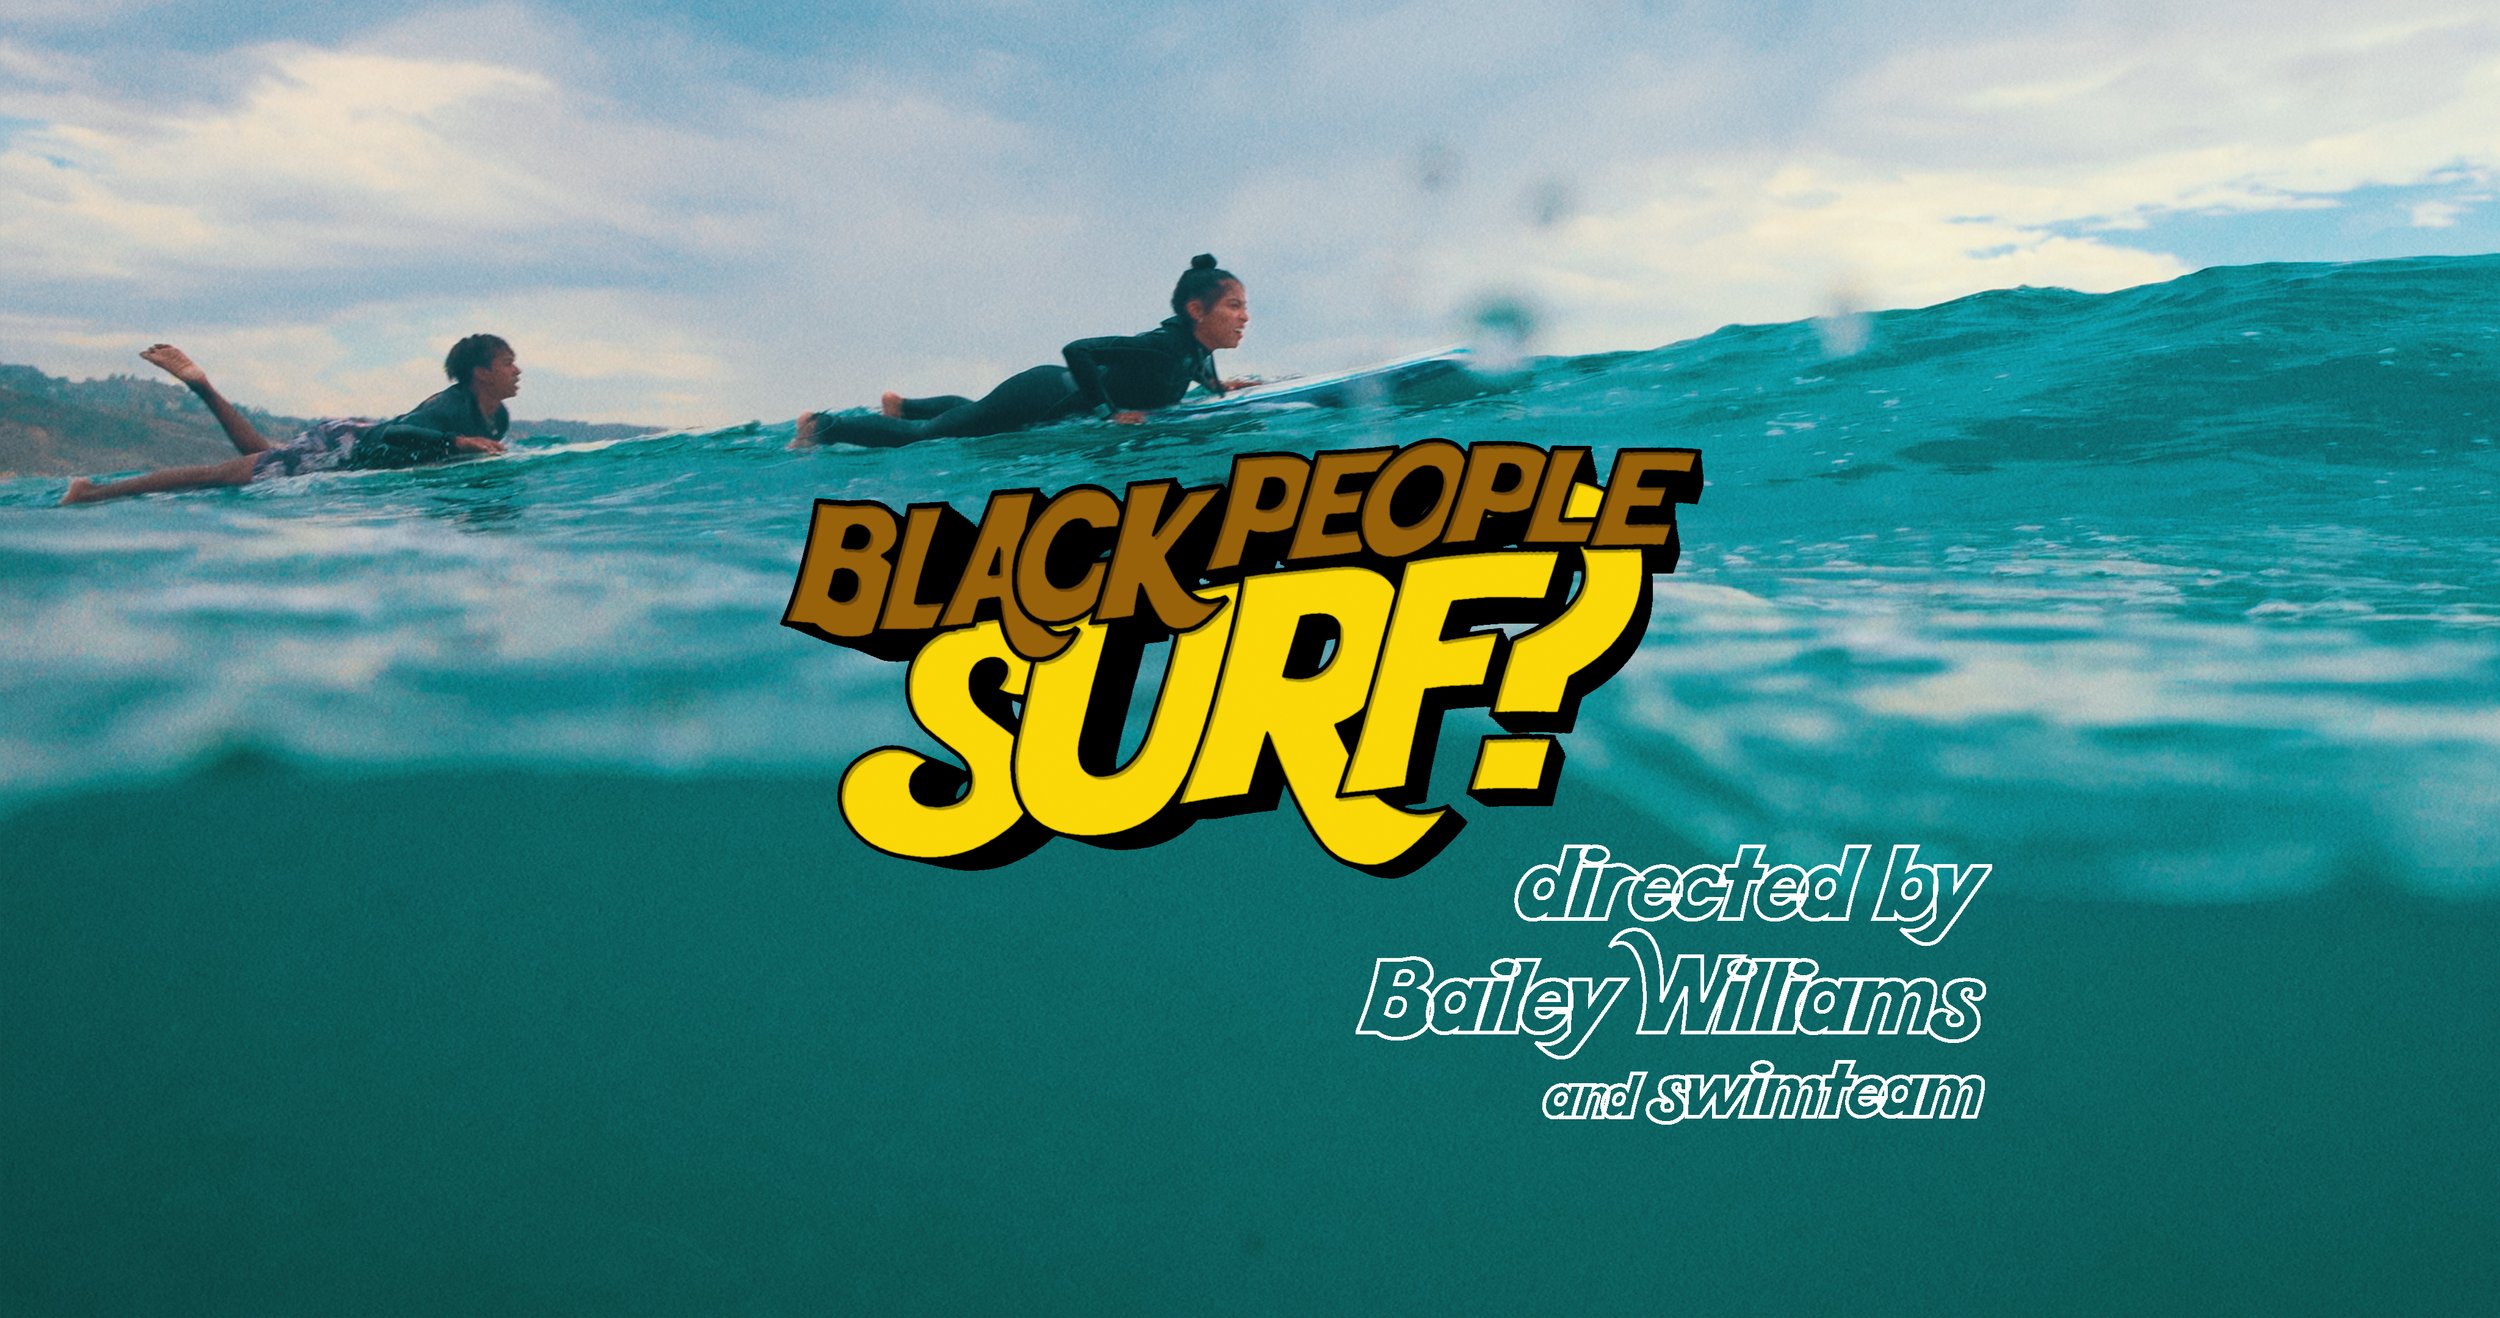 Black People Surf?